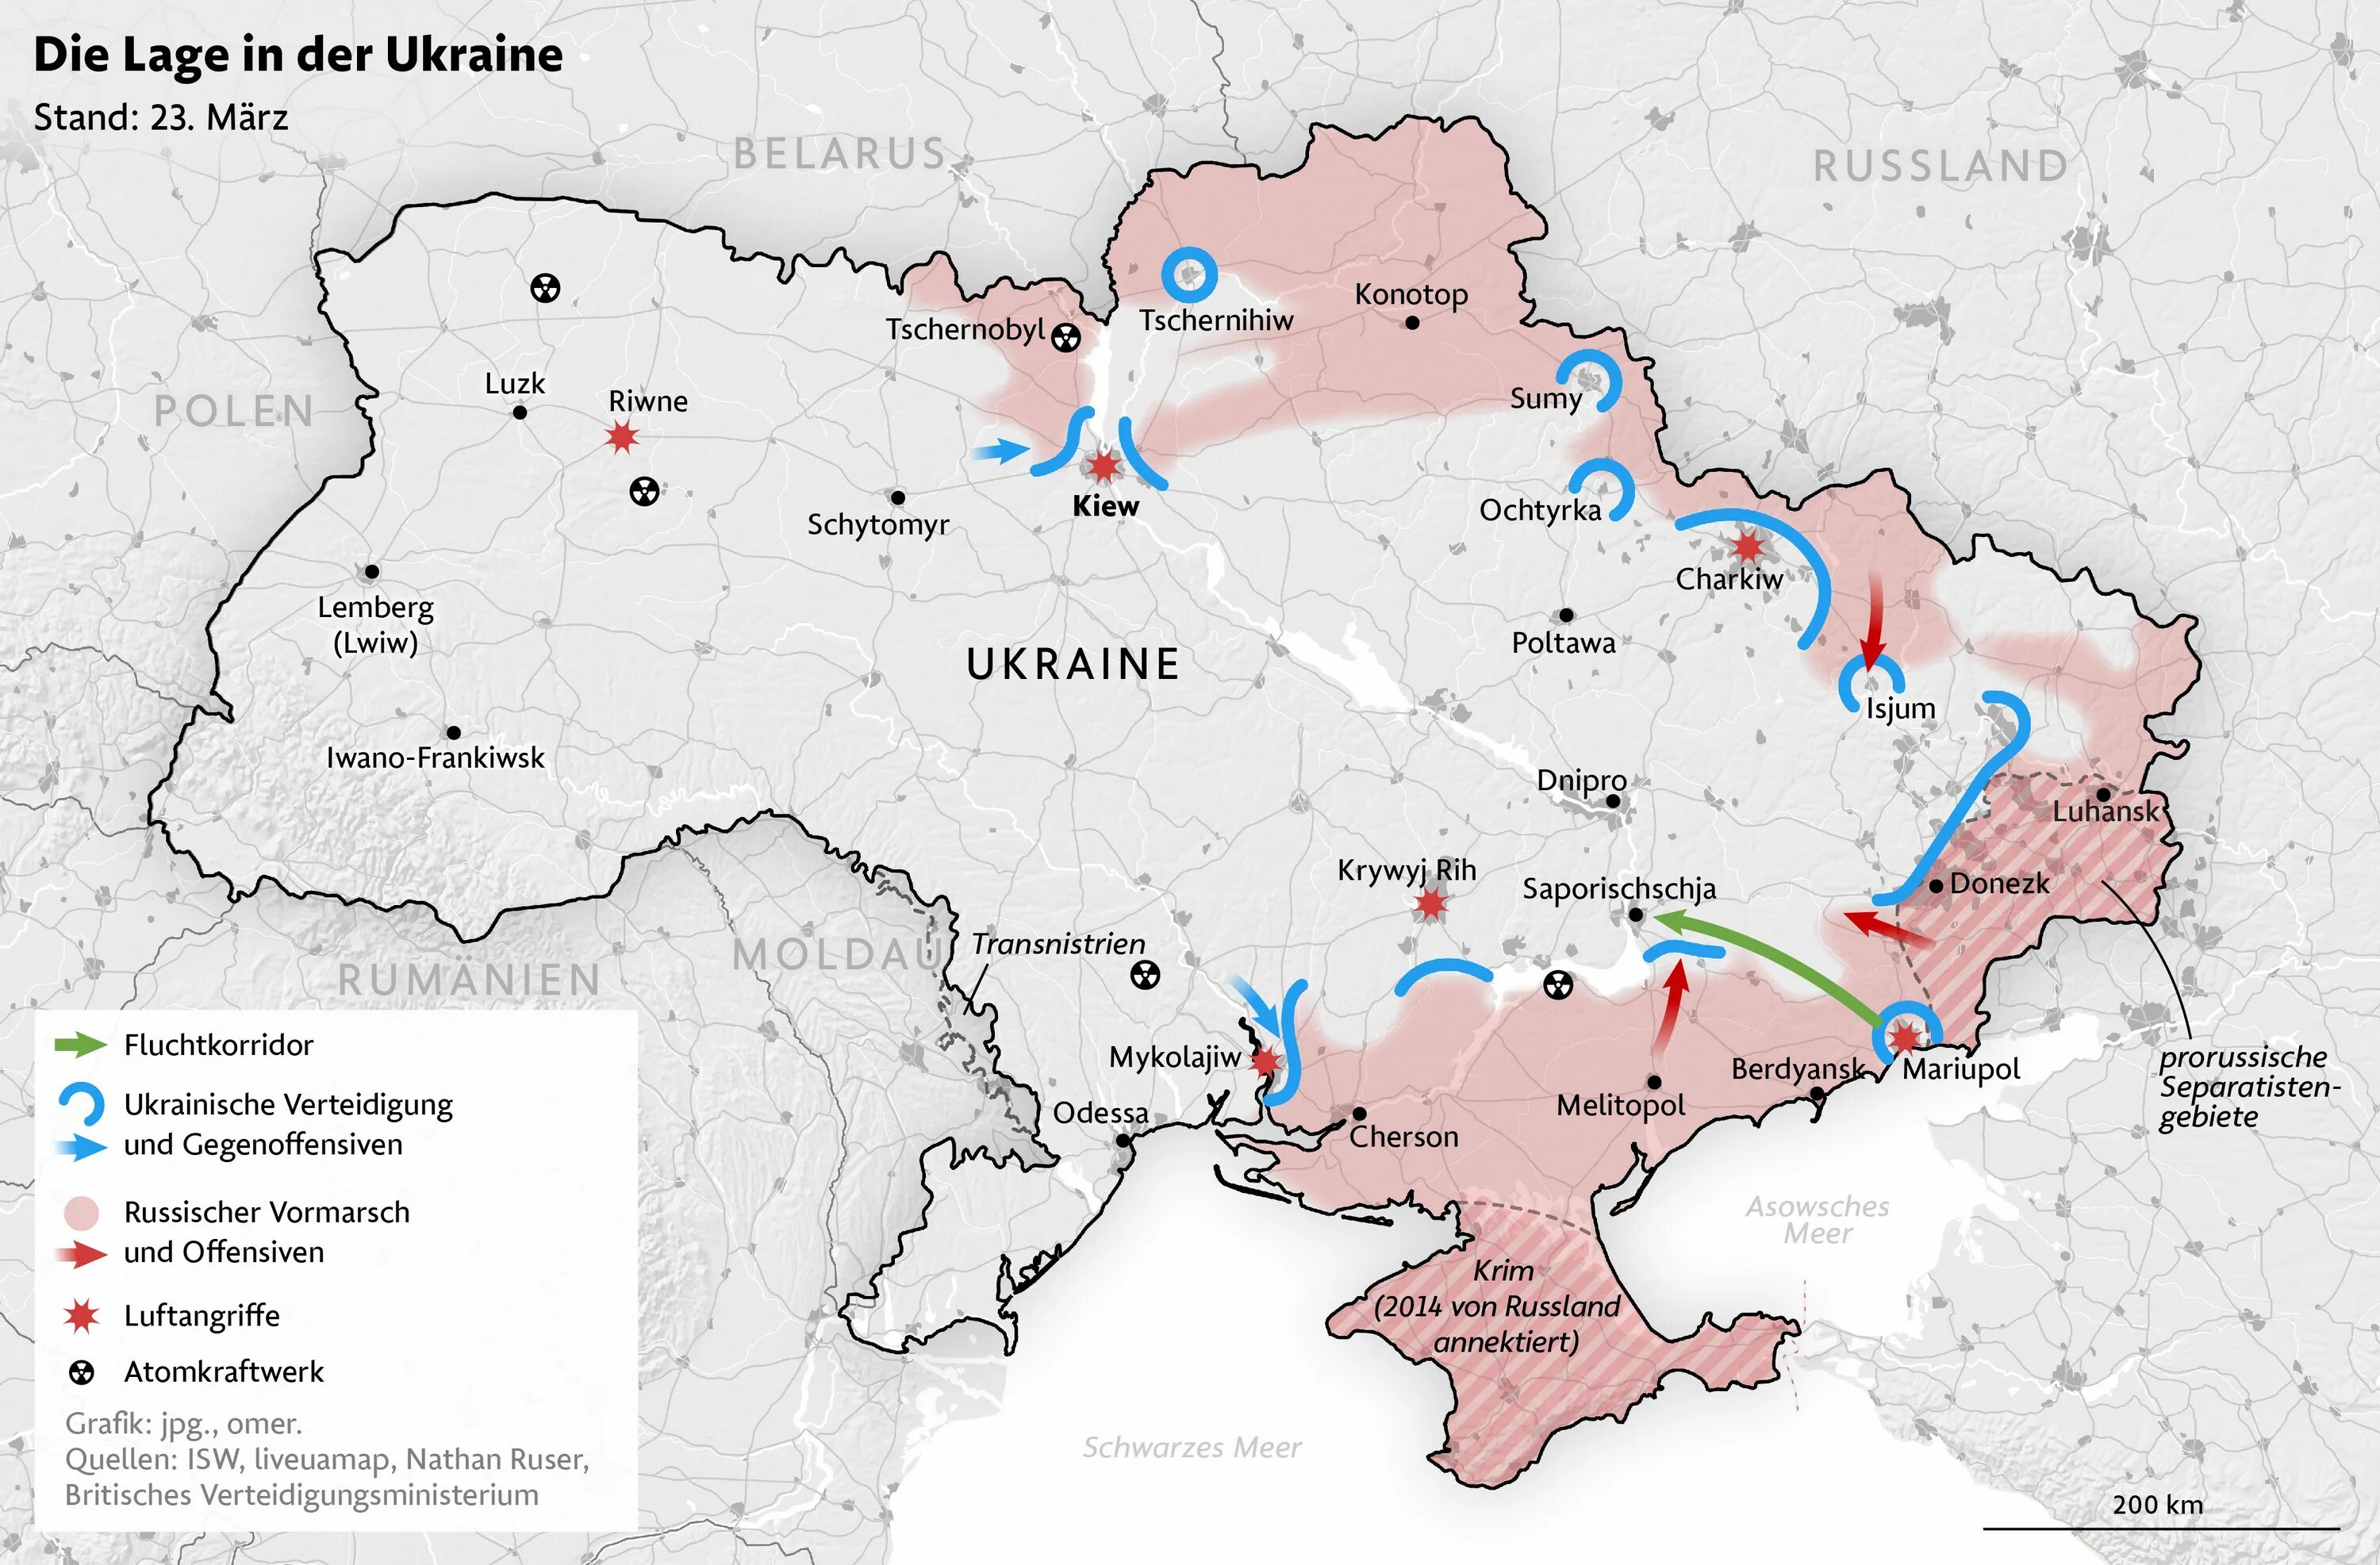 Мариуполь на карте. Мариуполь на карте Донецкой народной Республики. Границы Украины. Карта ЛНР.